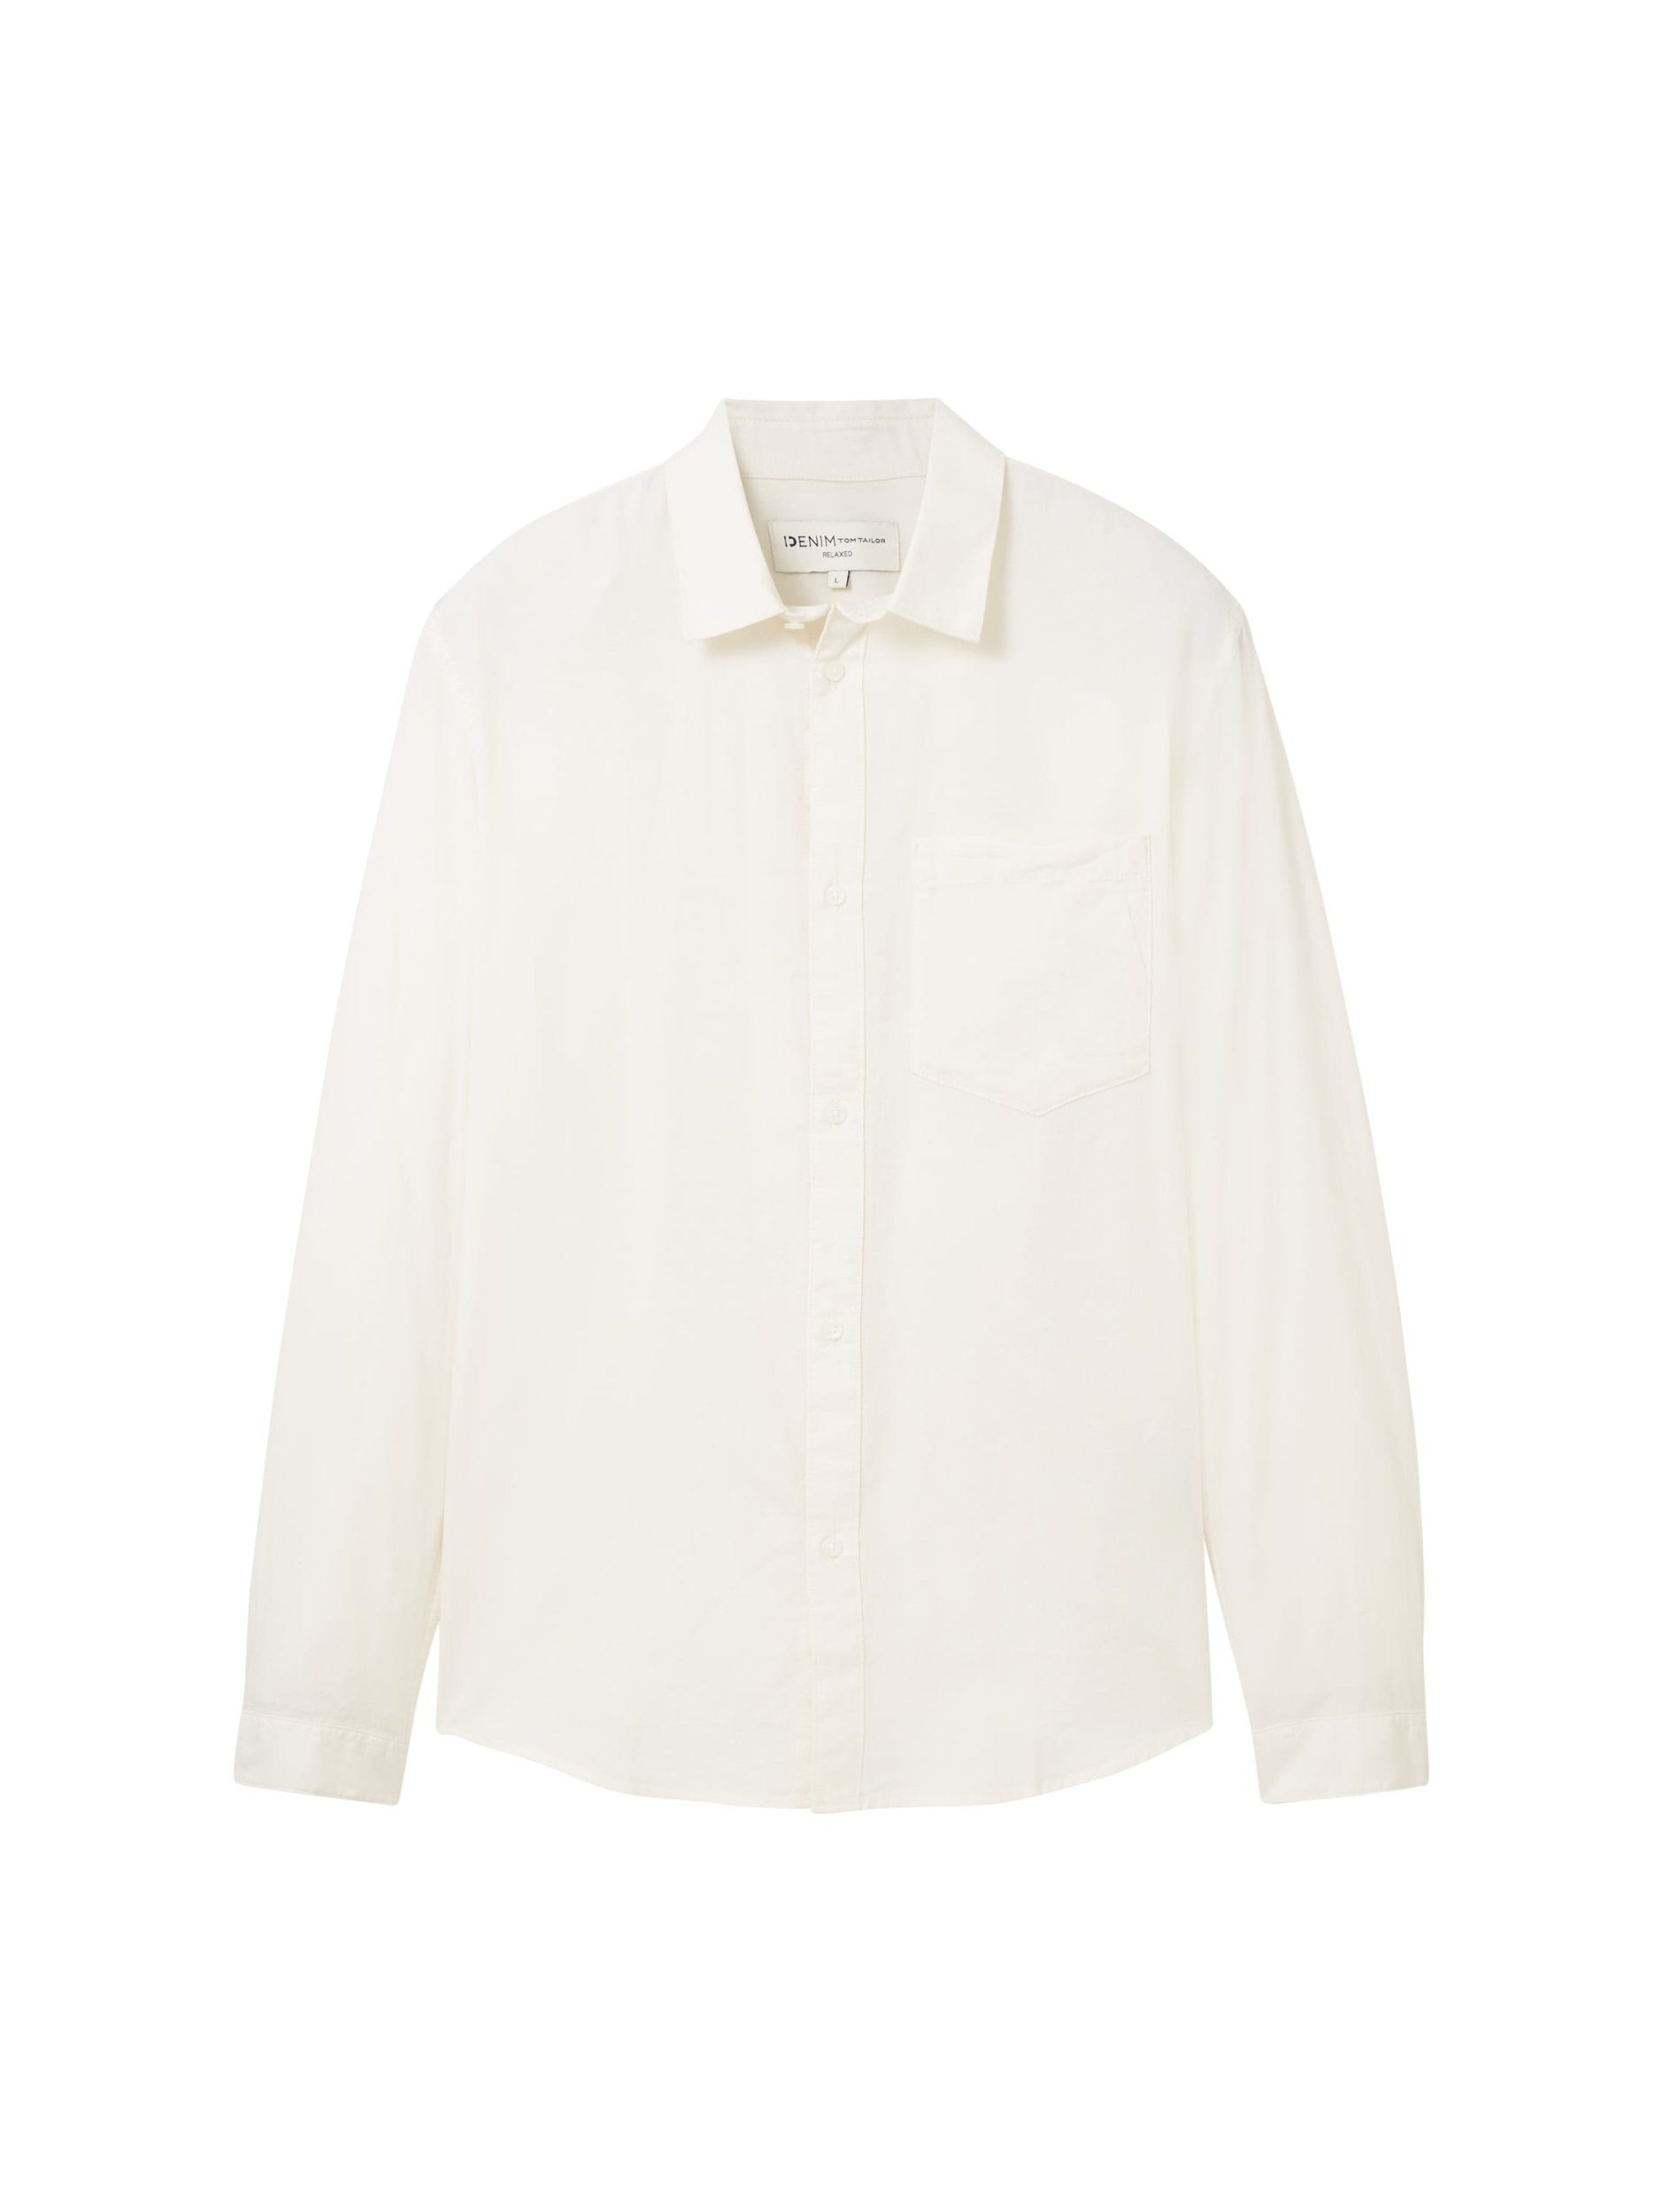 TOM TAILOR Denim Langarmhemd oxford shirt Wool White